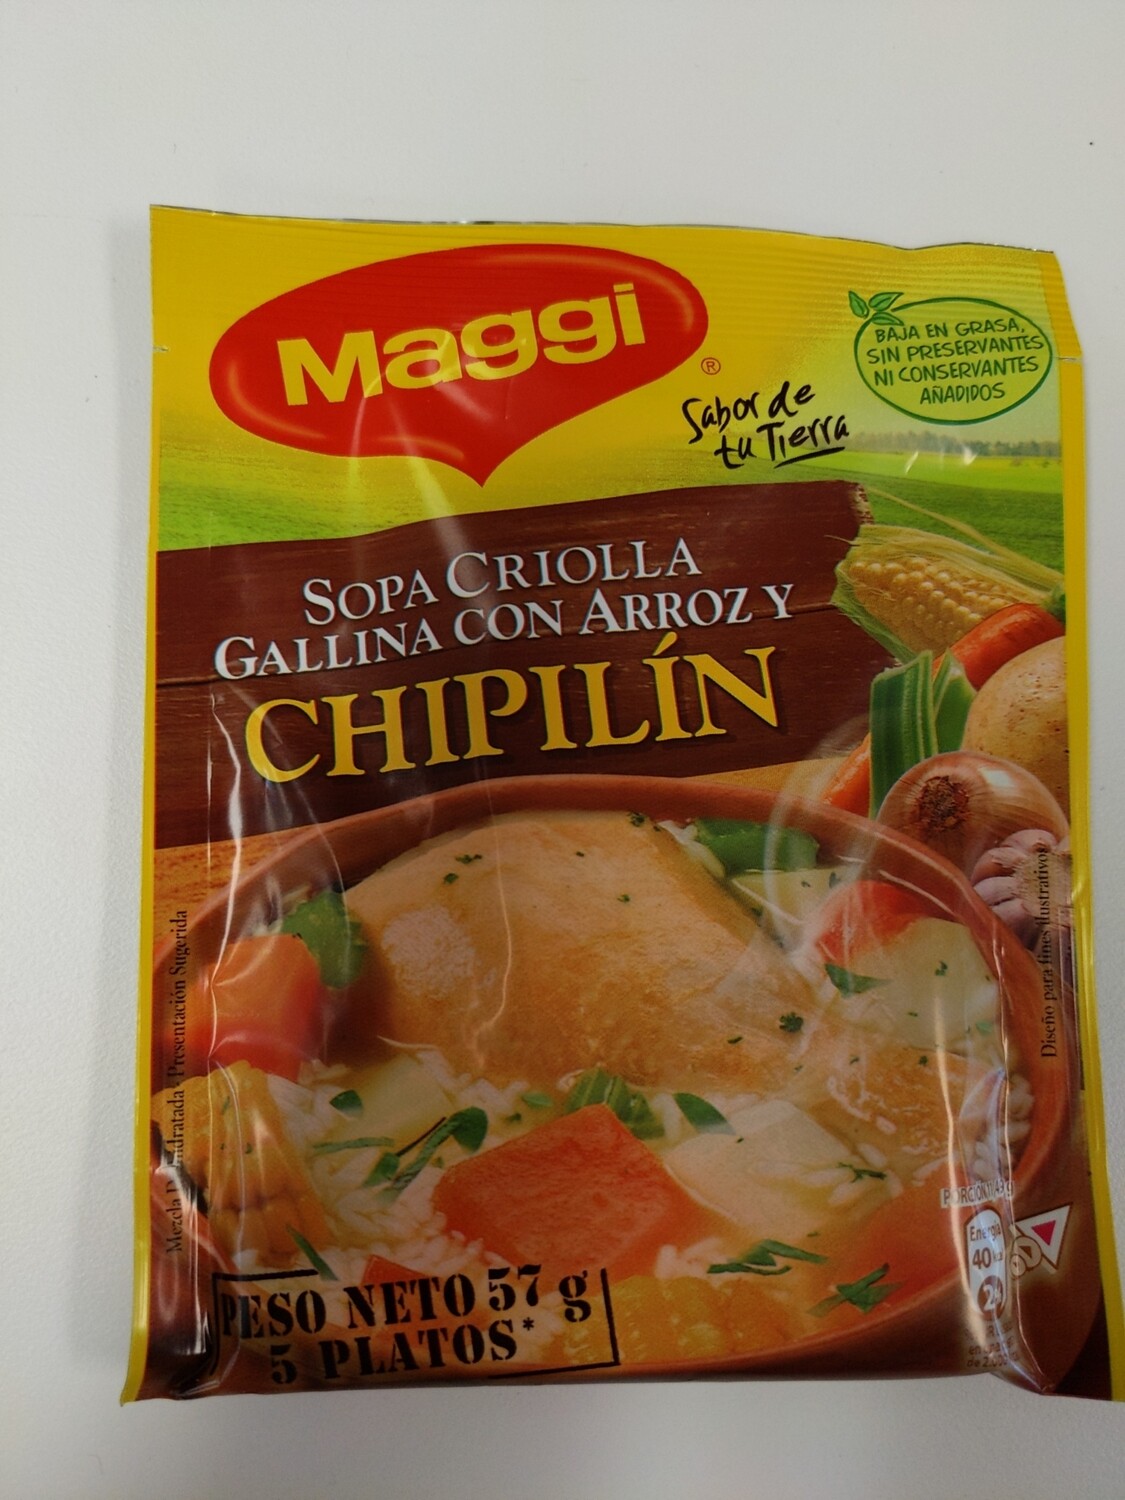 Sopa Criolla Gallina con Arroz y Chipilin 57g